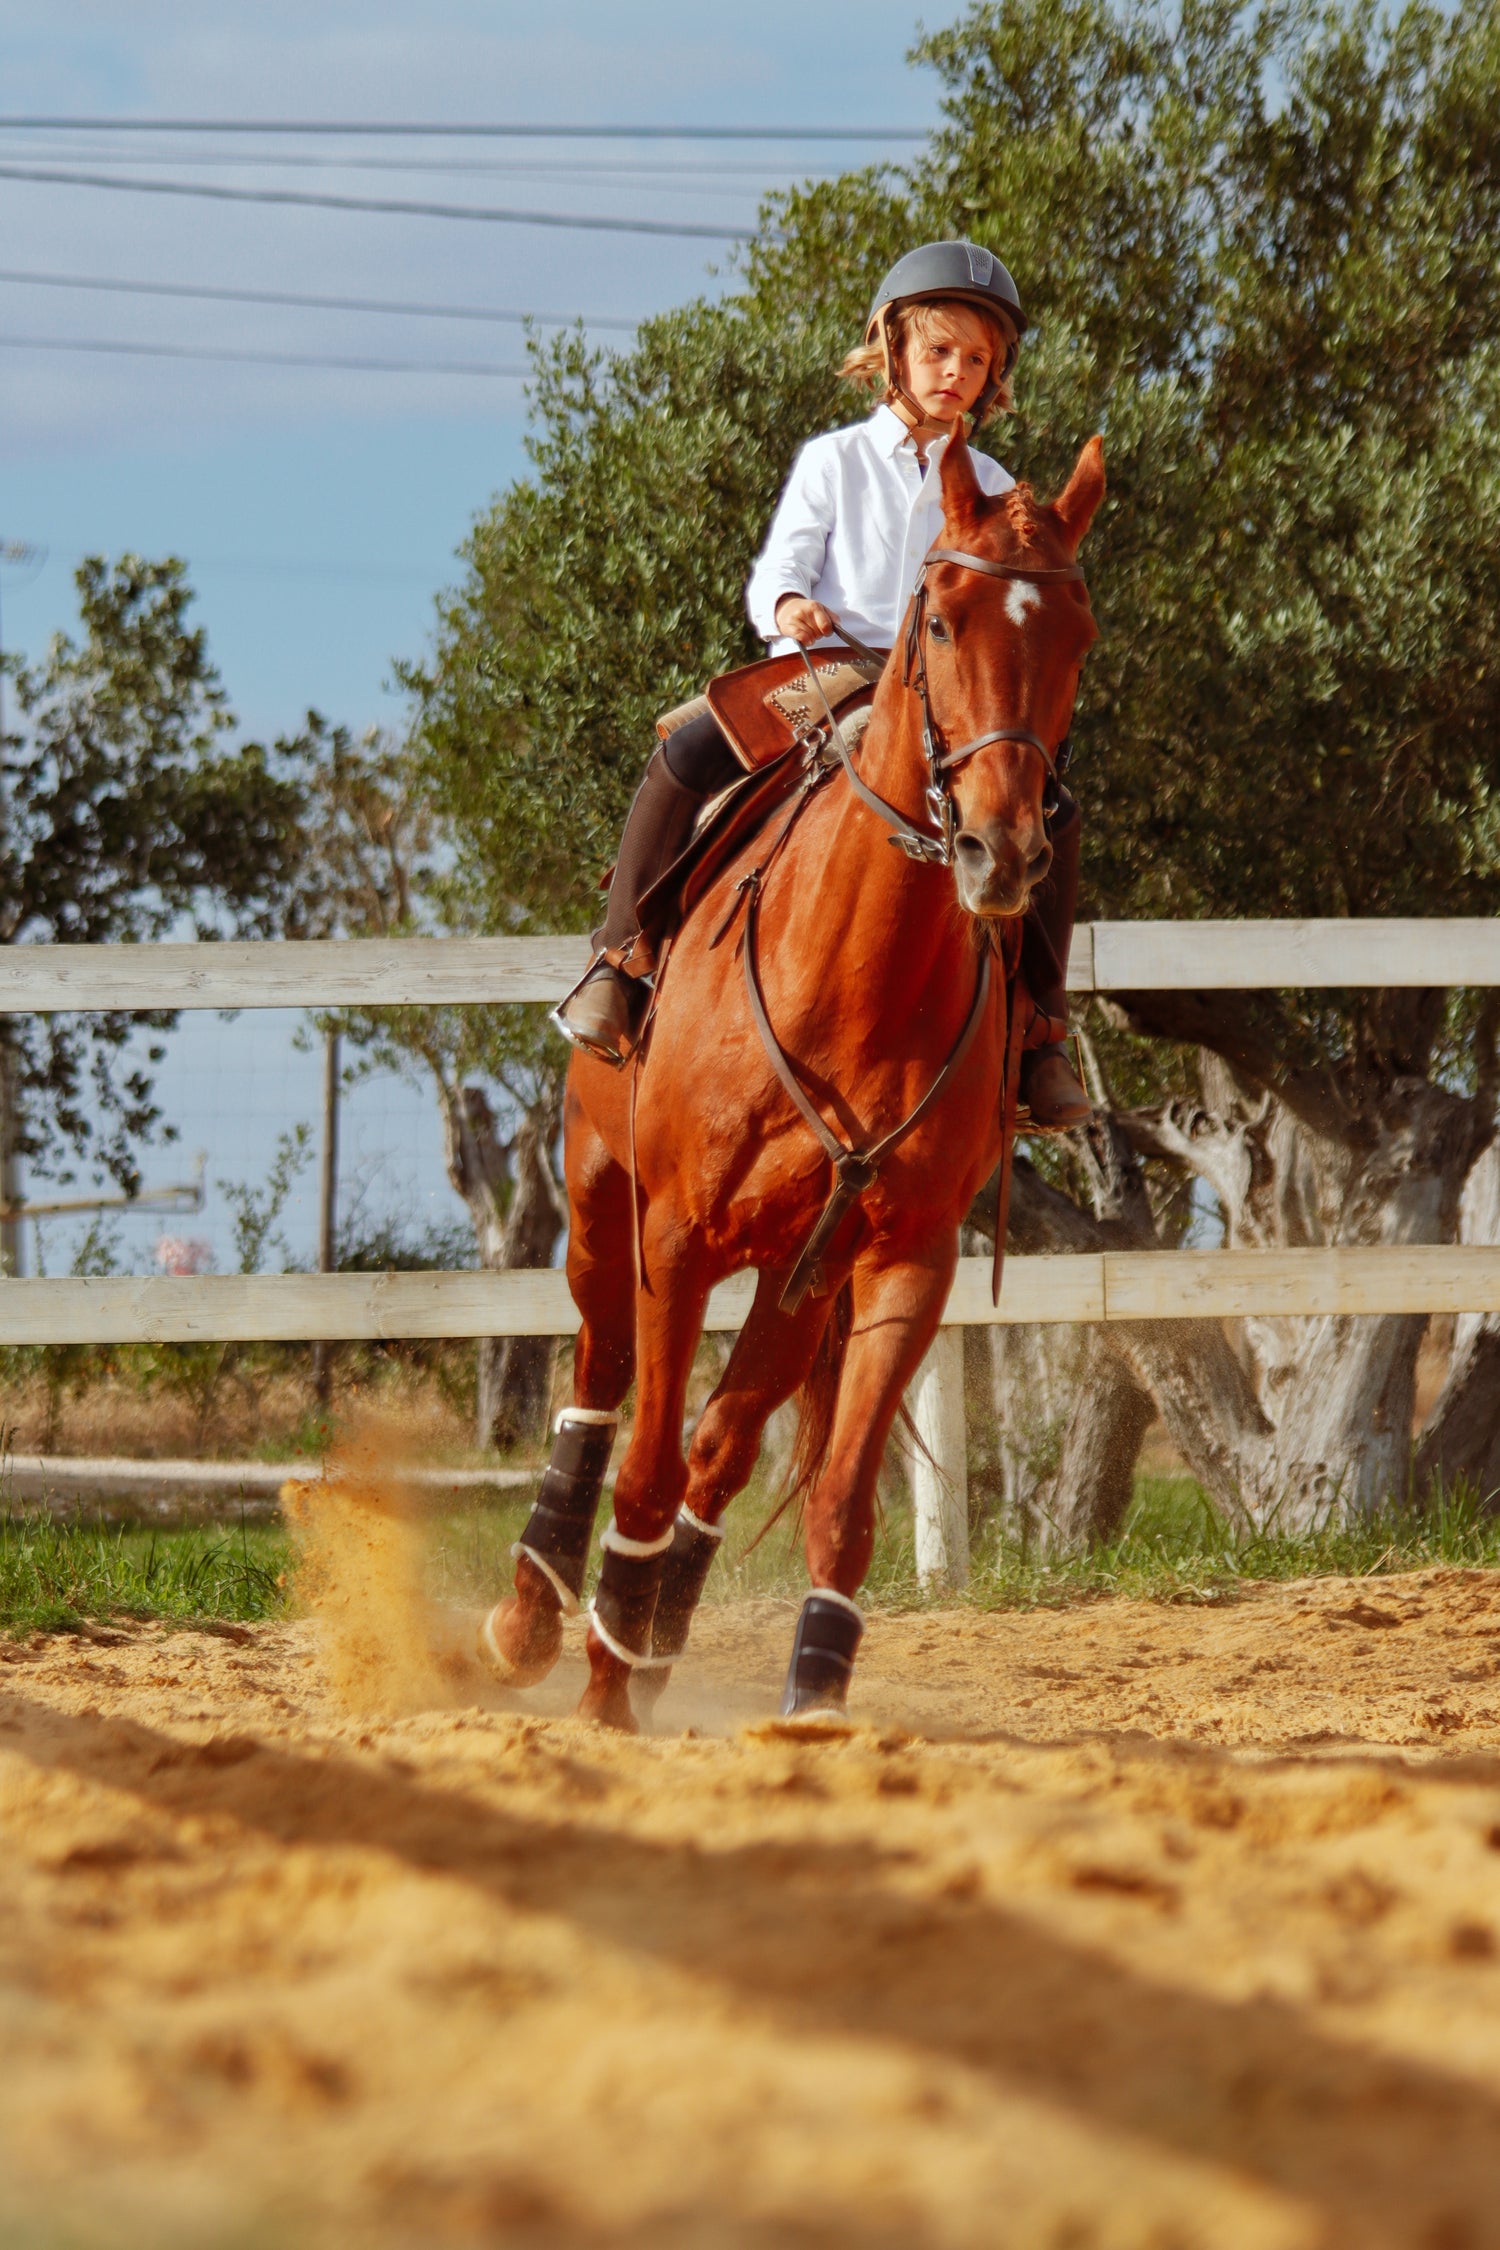 Caixa - Oferta • Jogo Cavalo em Linha + Batismo Equestre – Andar a cavalo